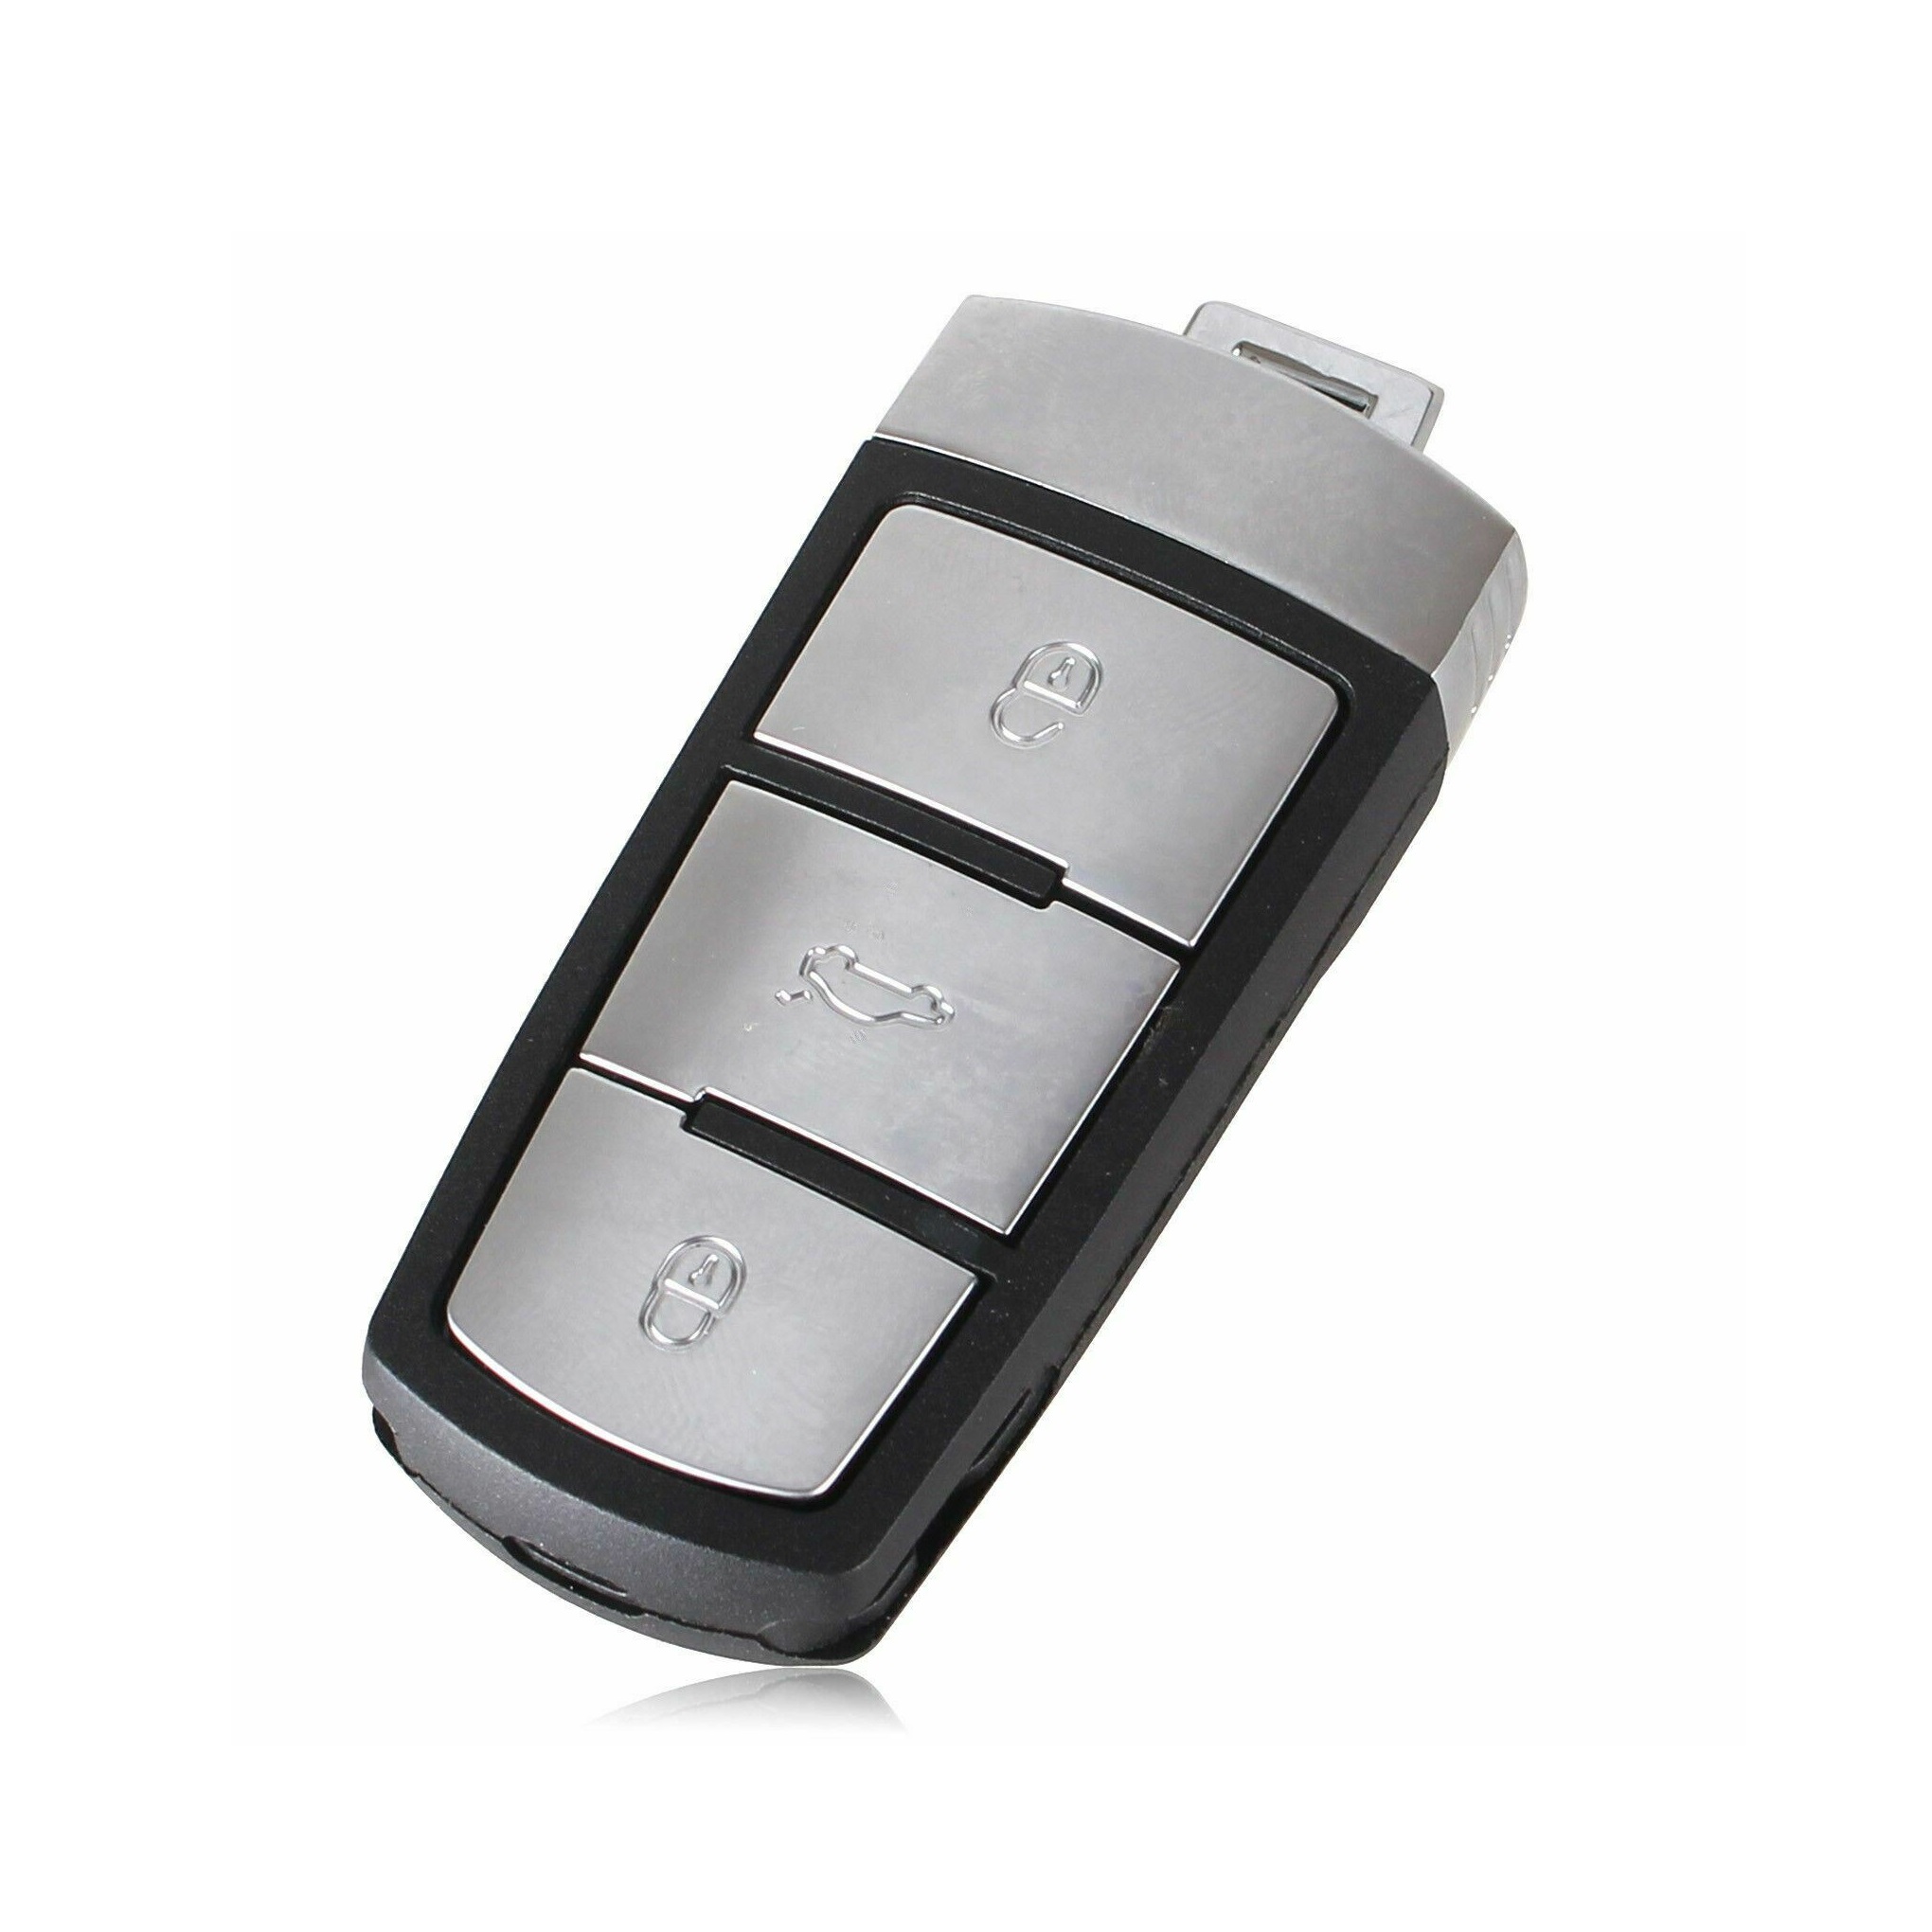 VW-Passat-smart-kljuc-sa-daljinskim-komandama-3-tastera-ID48-433mhz